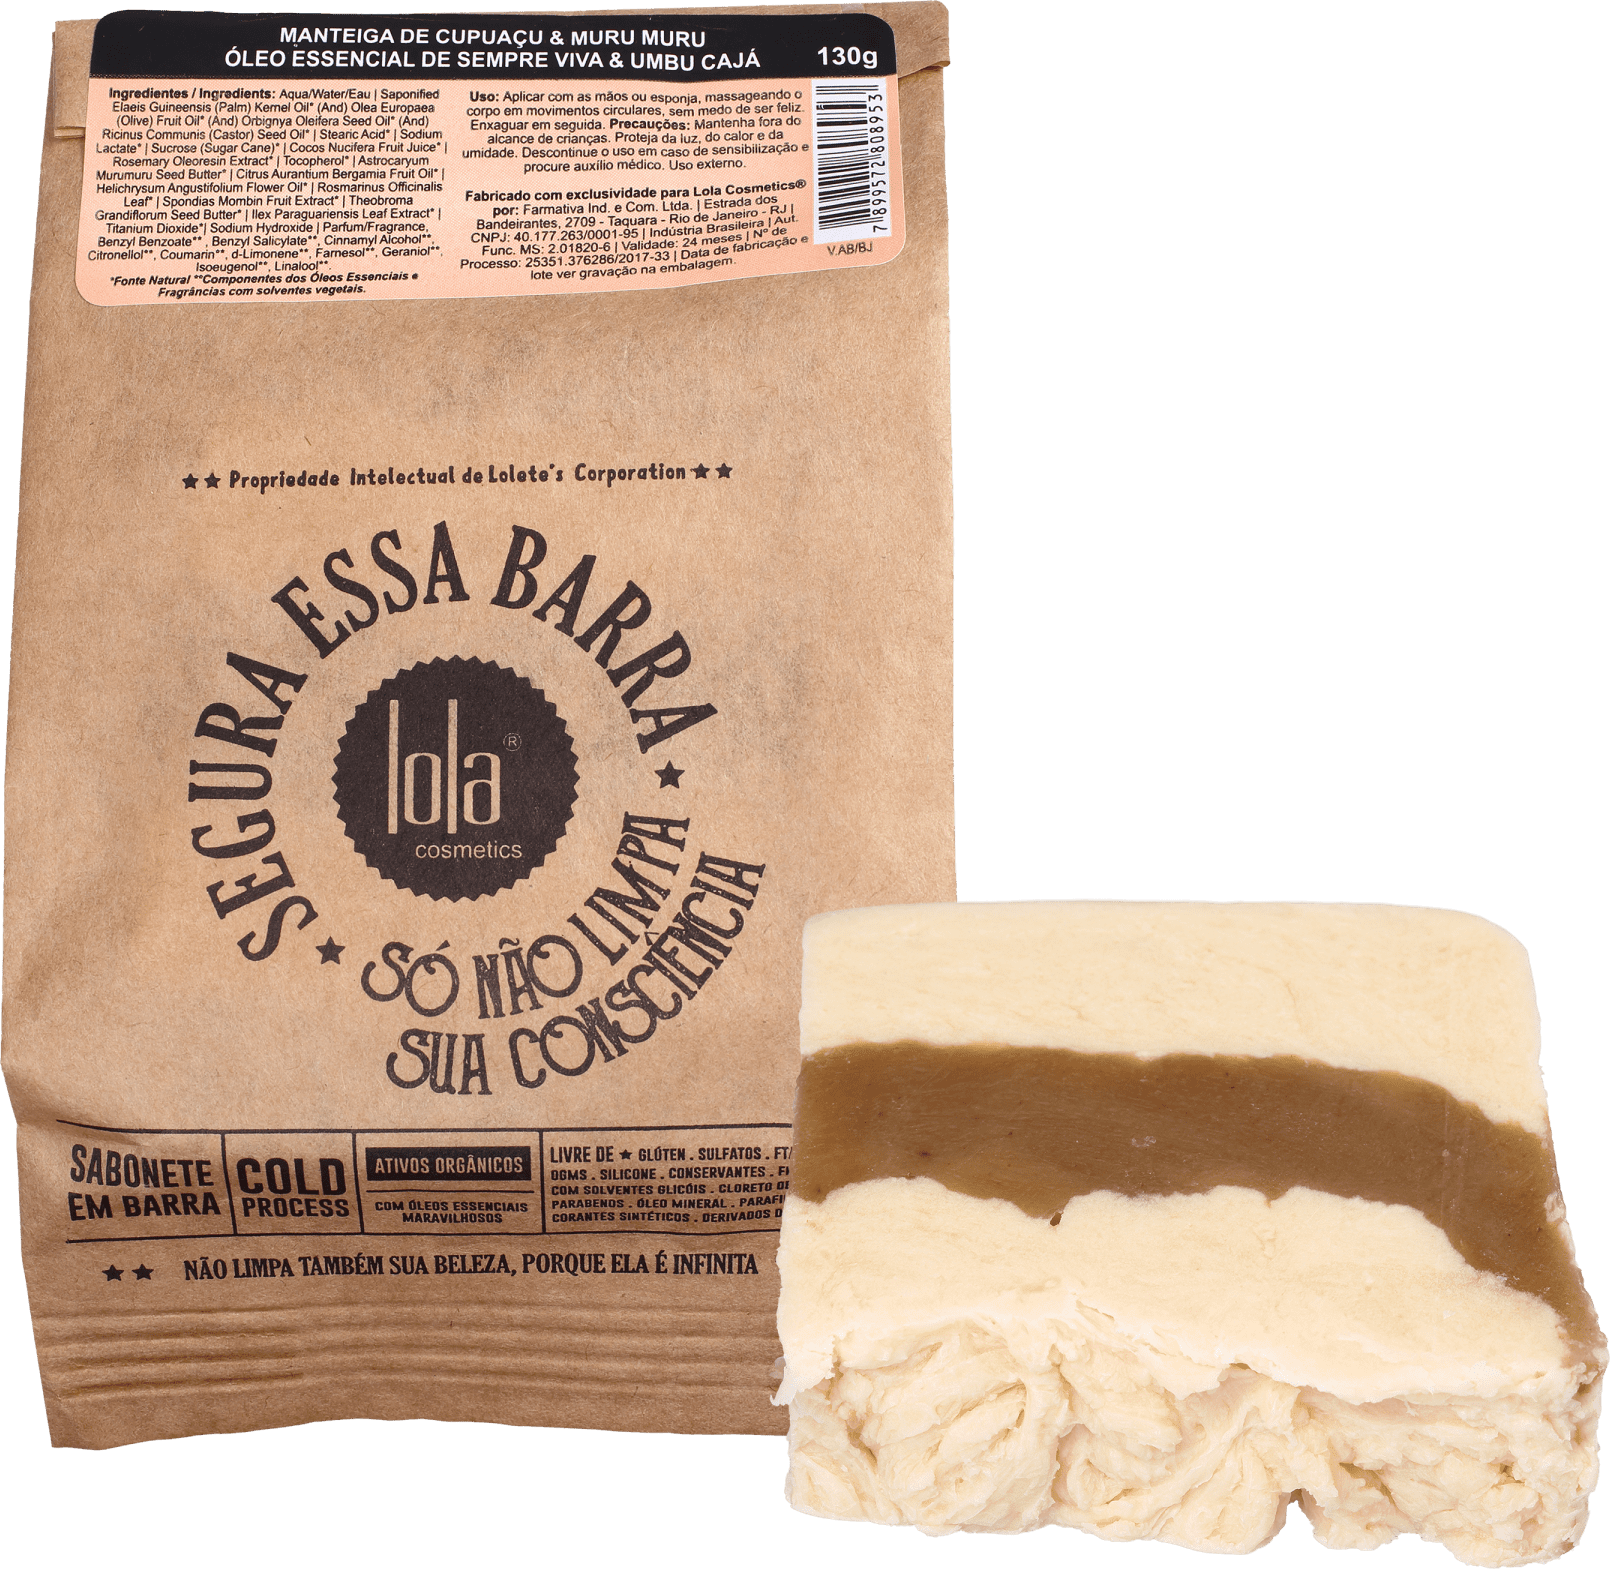 Manteiga de Murumuru - Pele sensível, silicone vegetal, Cuidado